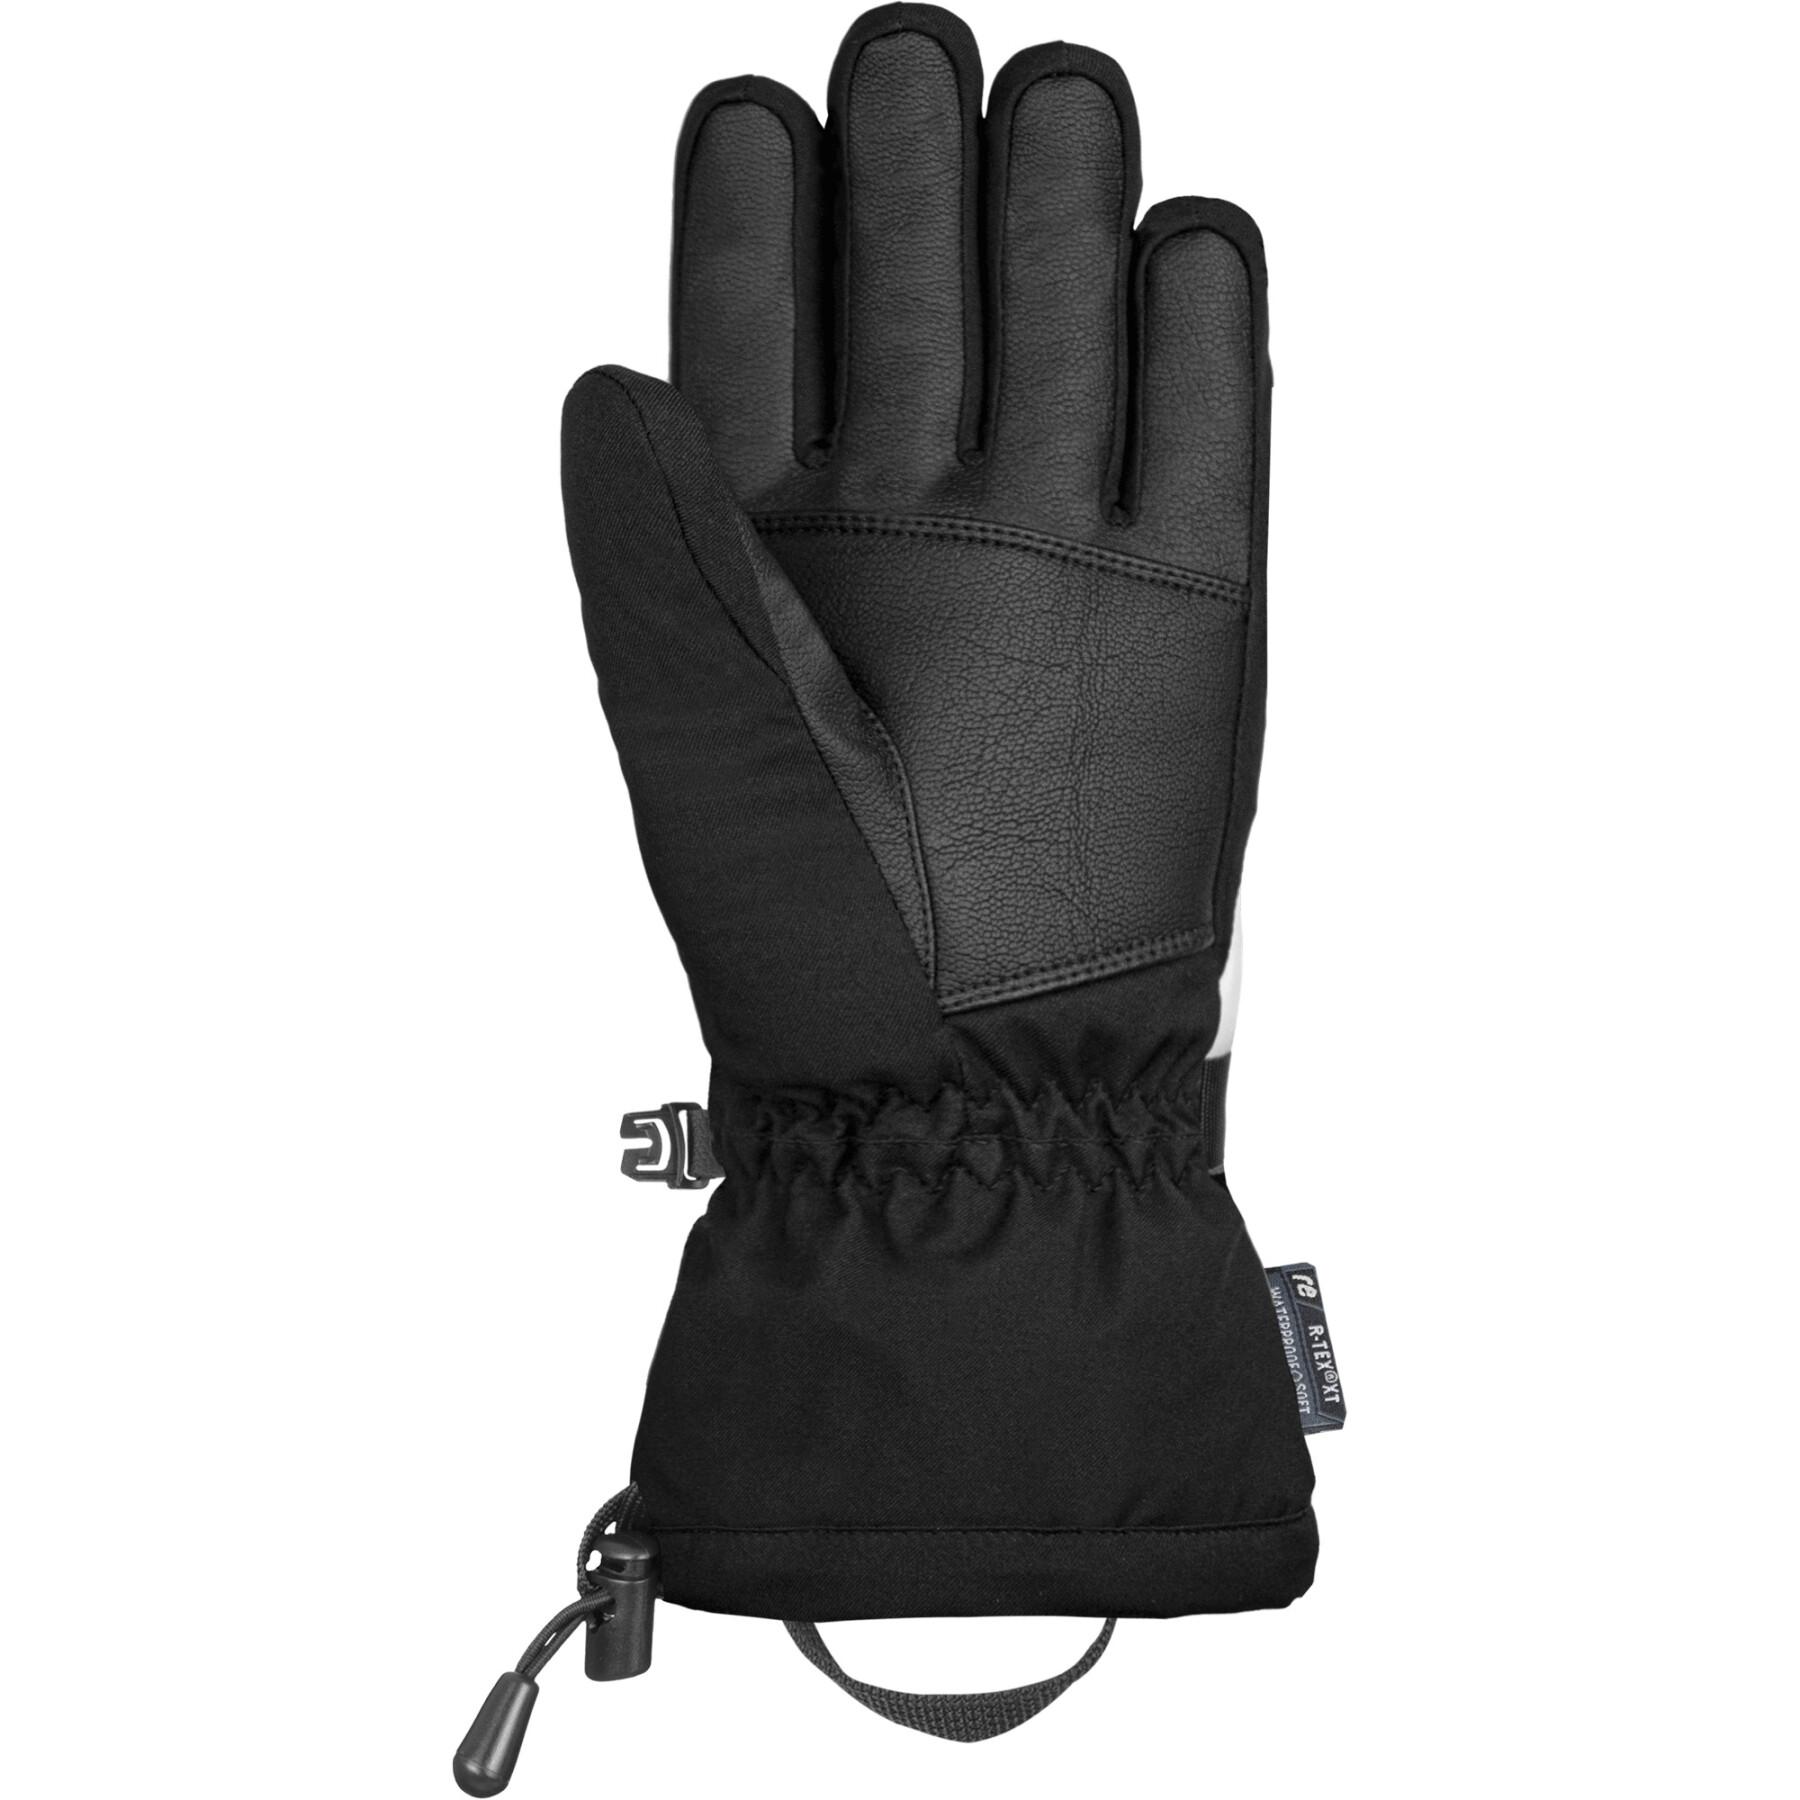 Half gloves Reusch R-TEX® XT